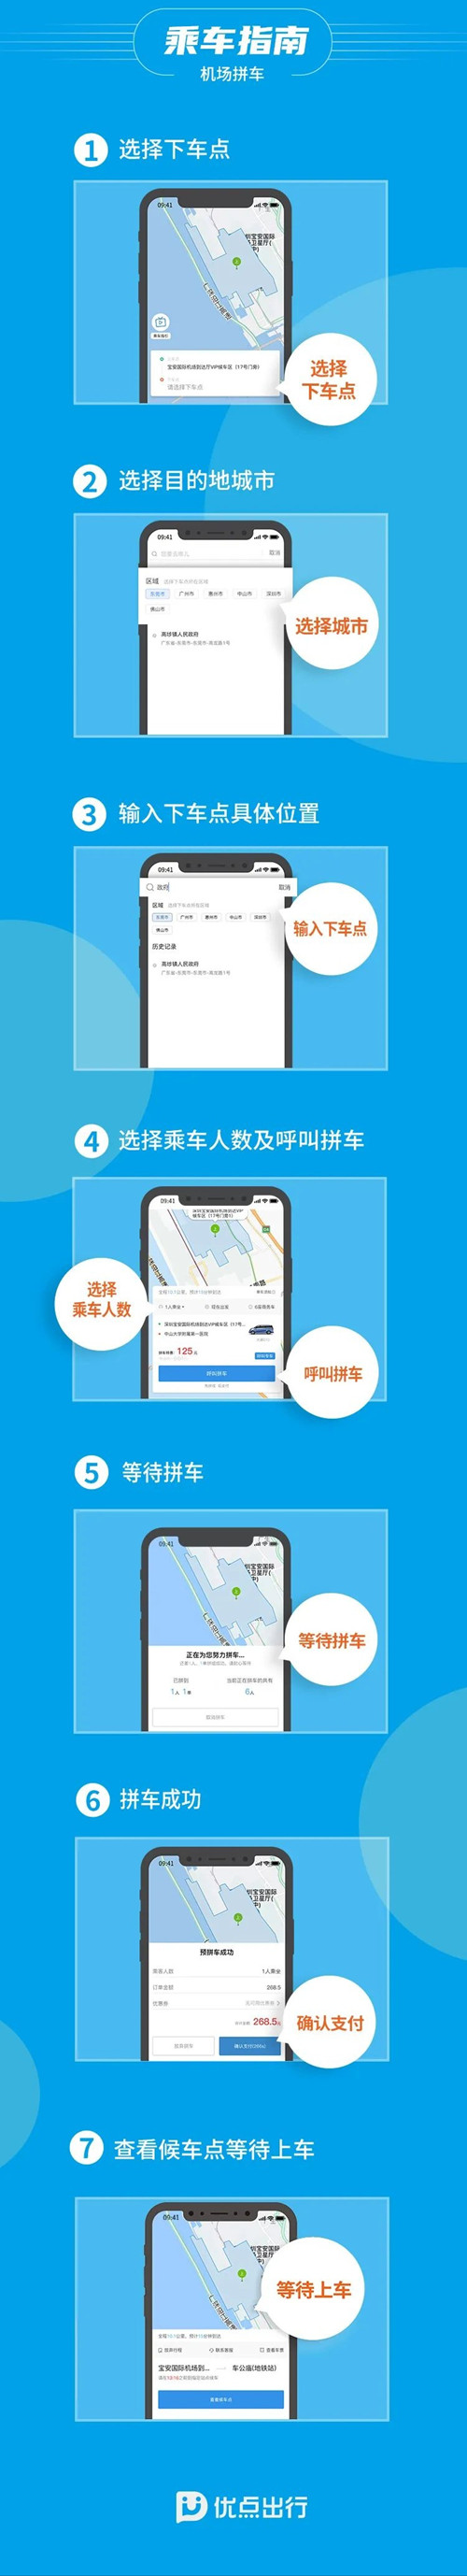 2021深圳机场拼车收费标准!深圳机场拼车多少钱每公里?